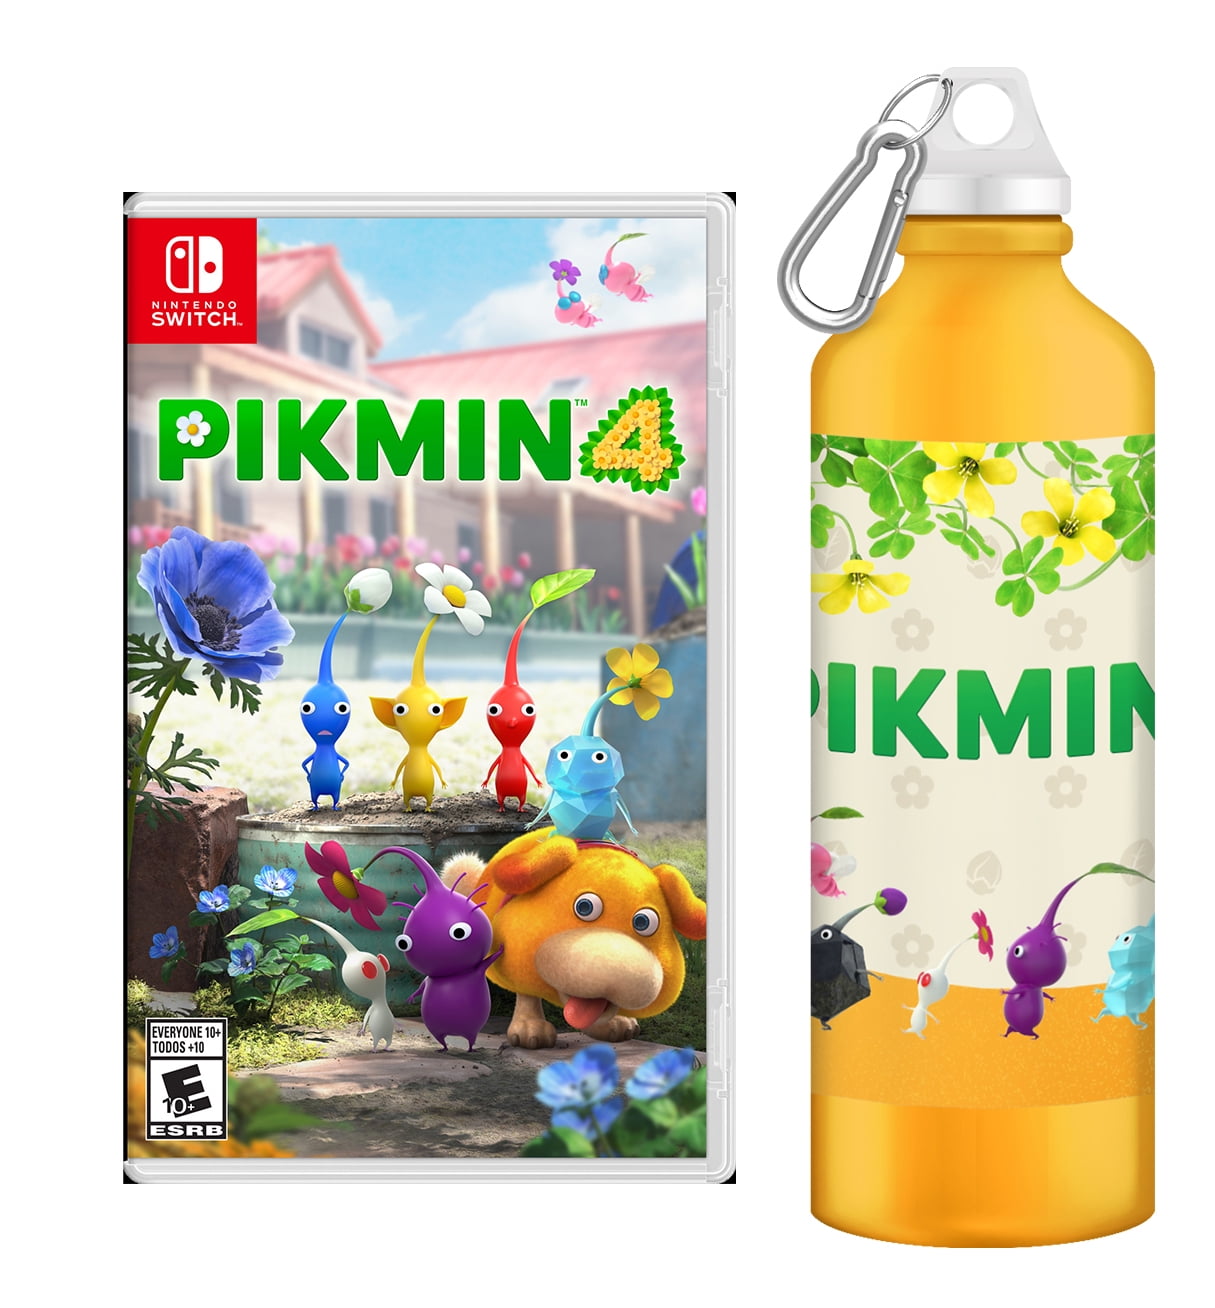 Pikmin 4 - Nintendo Switch, Nintendo Switch